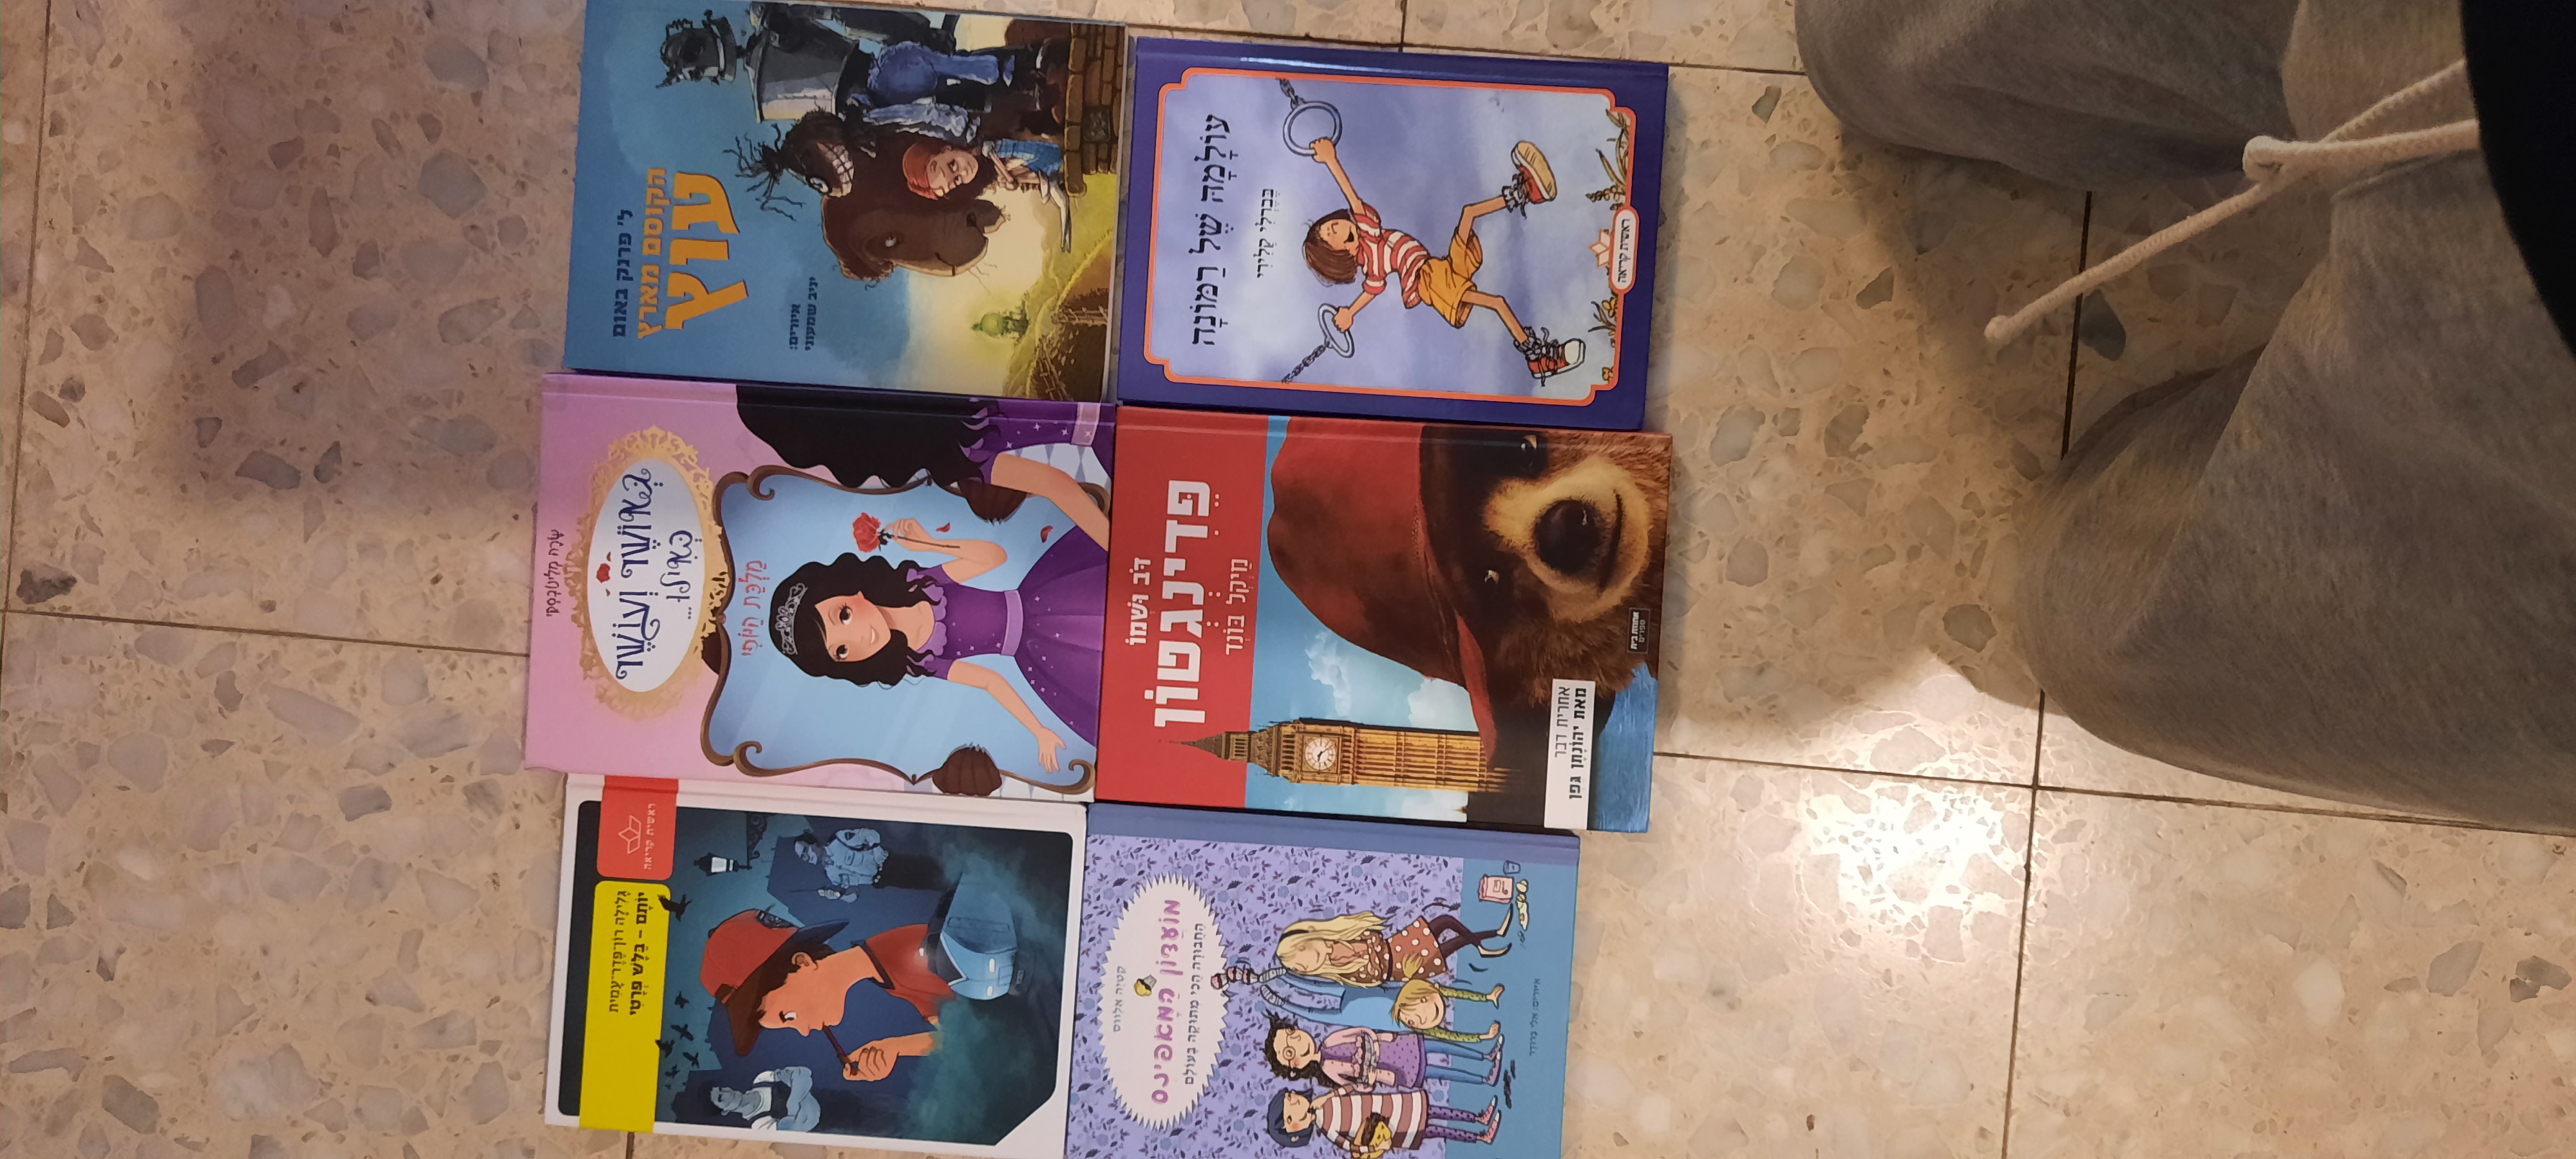 תמונה 1 ,ספרי ילדים ונוער כחדשים למכירה בראשל"צ לתינוק ולילד  ספרי ילדים